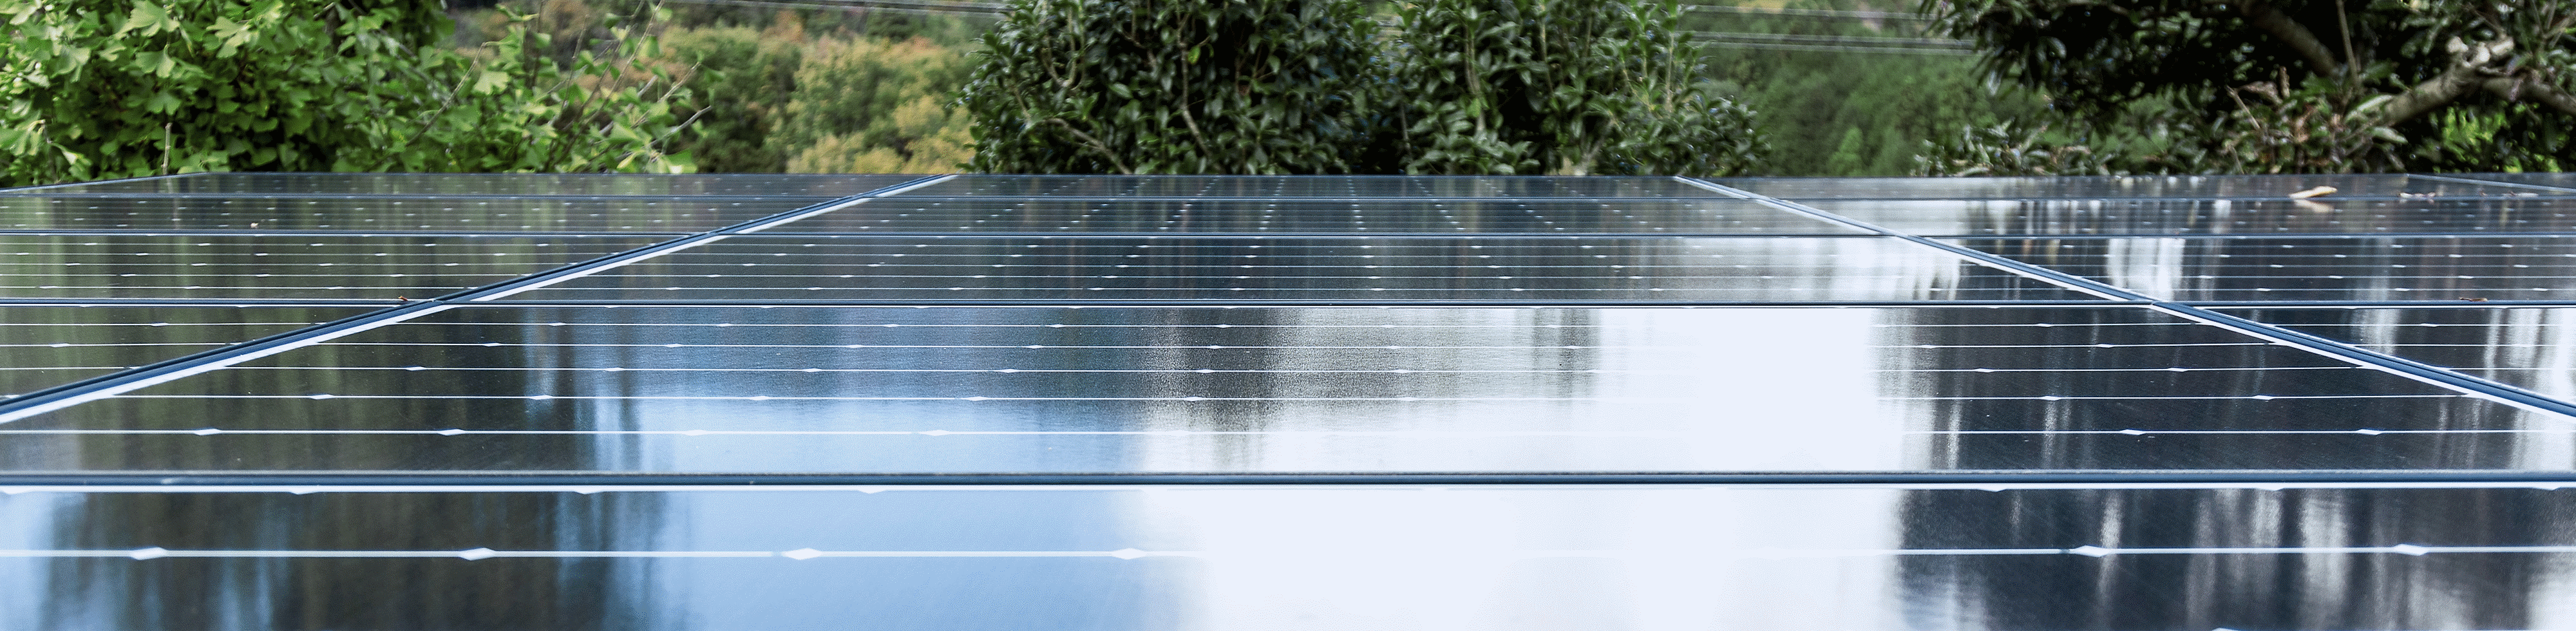 Fotografía que muestra el techo de una fábrica cubierto por paneles solares